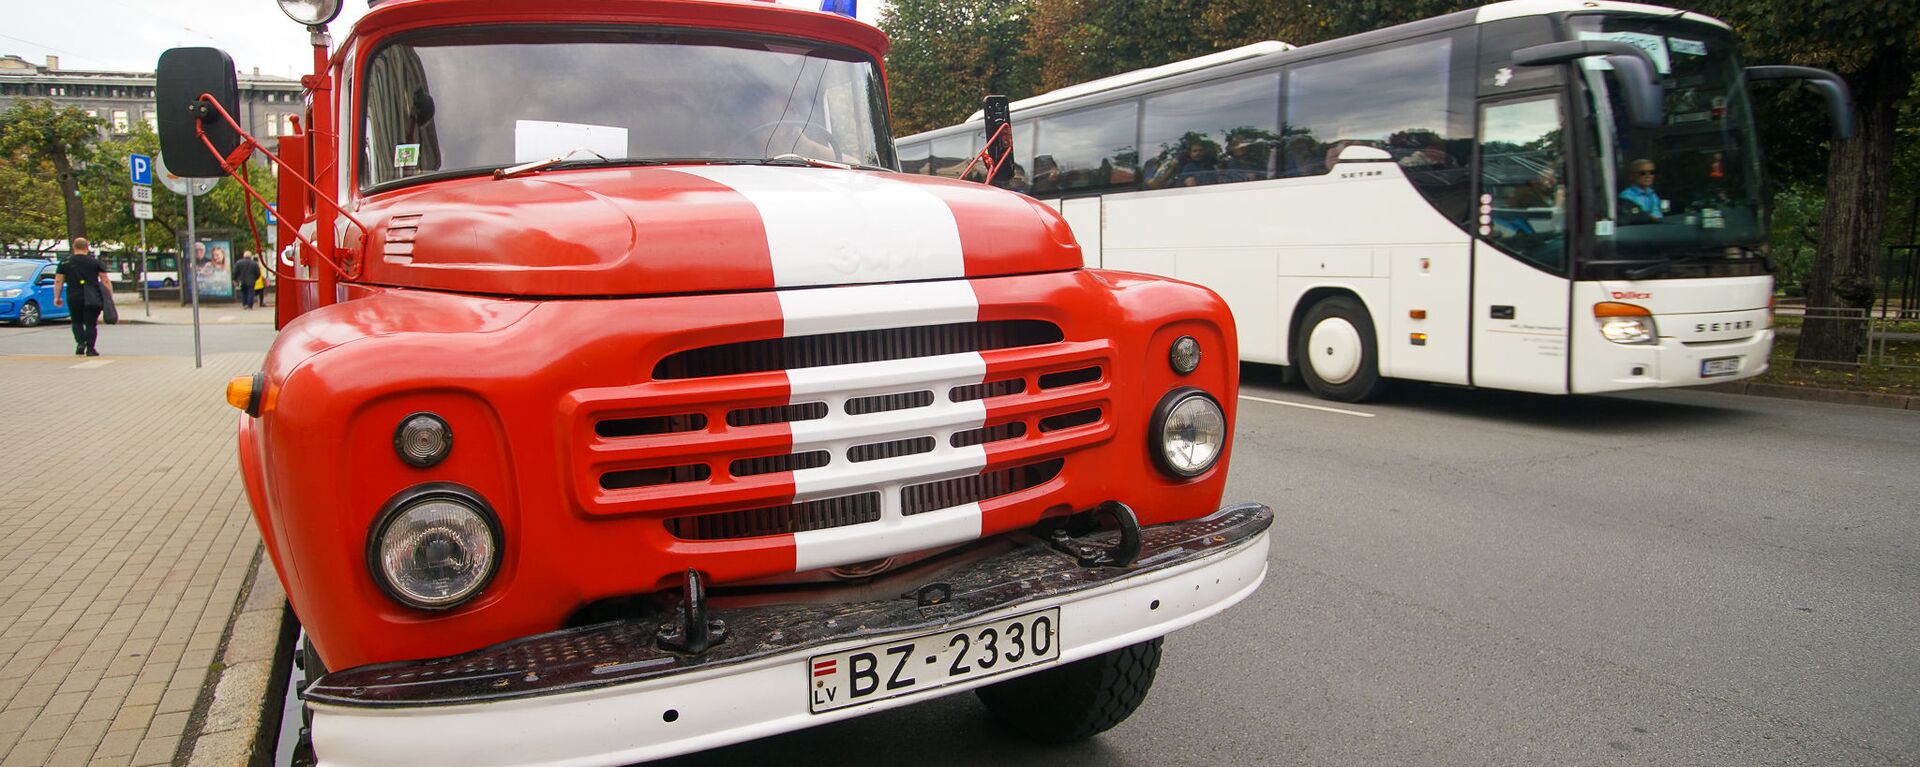 Пожарный автомобиль из Юрмалы 1984 года выпуска - Sputnik Латвия, 1920, 28.09.2021